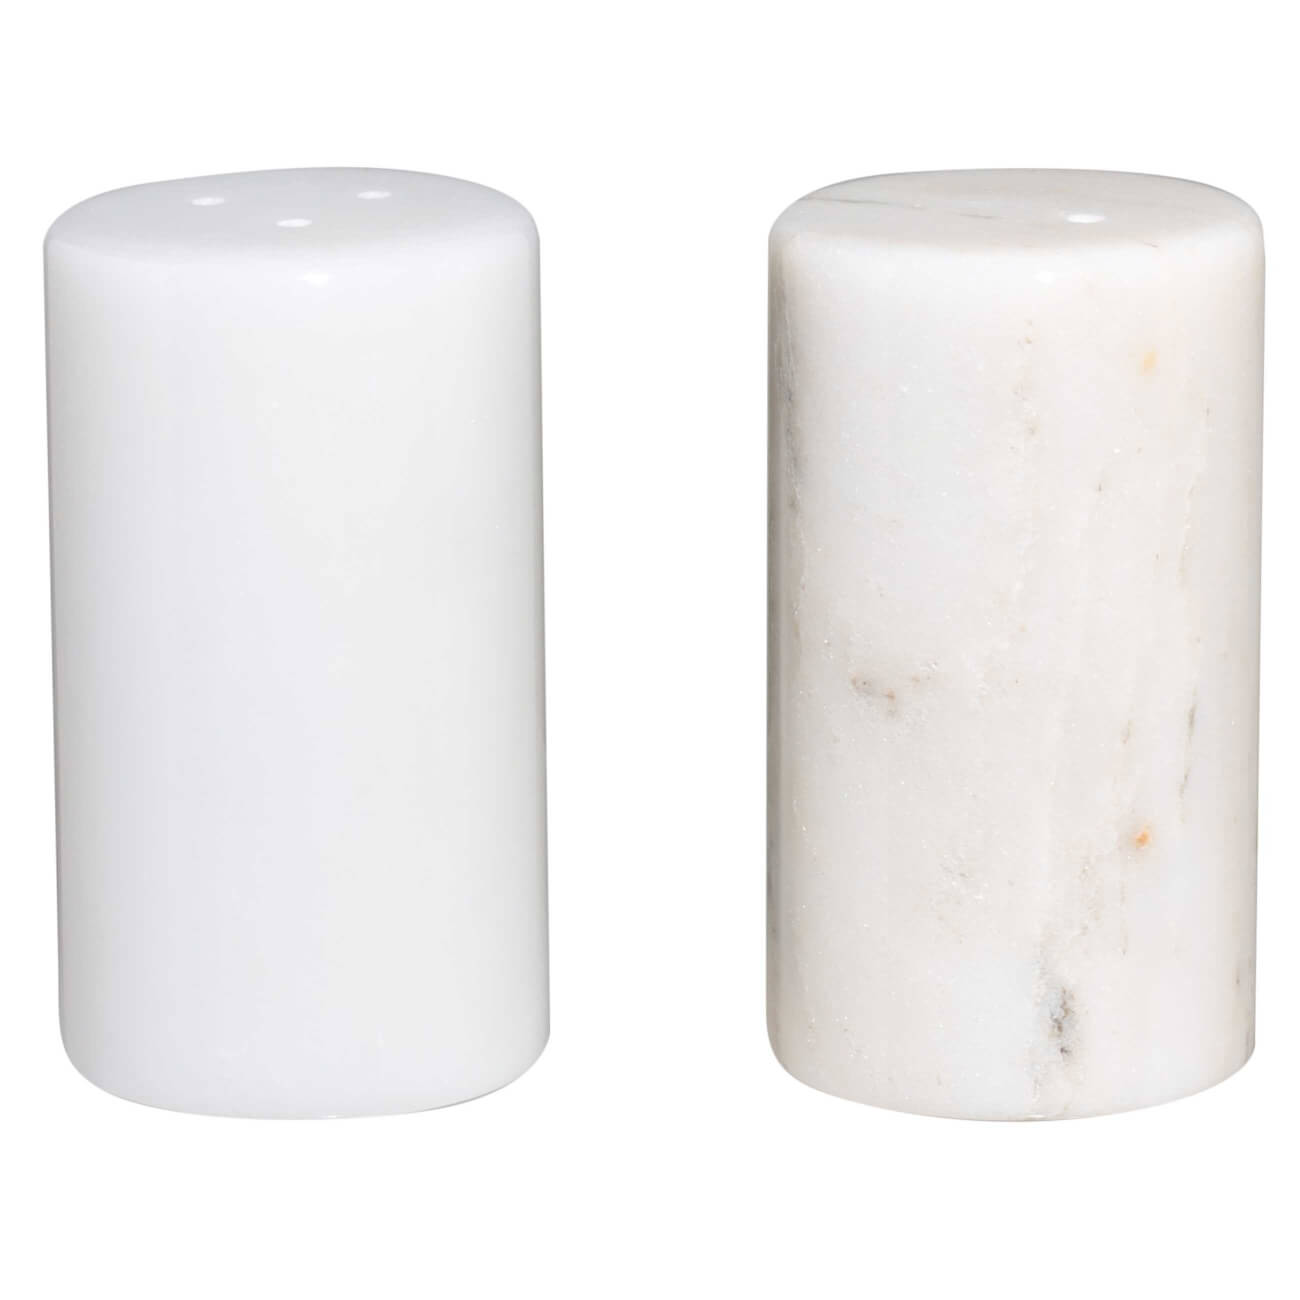 Набор для соли и перца, 9 см, мрамор, белый, Marble набор корзин плетеных 2 шт лукошко натуральный 21×16×22 см 17 5×12 5×17 5 см